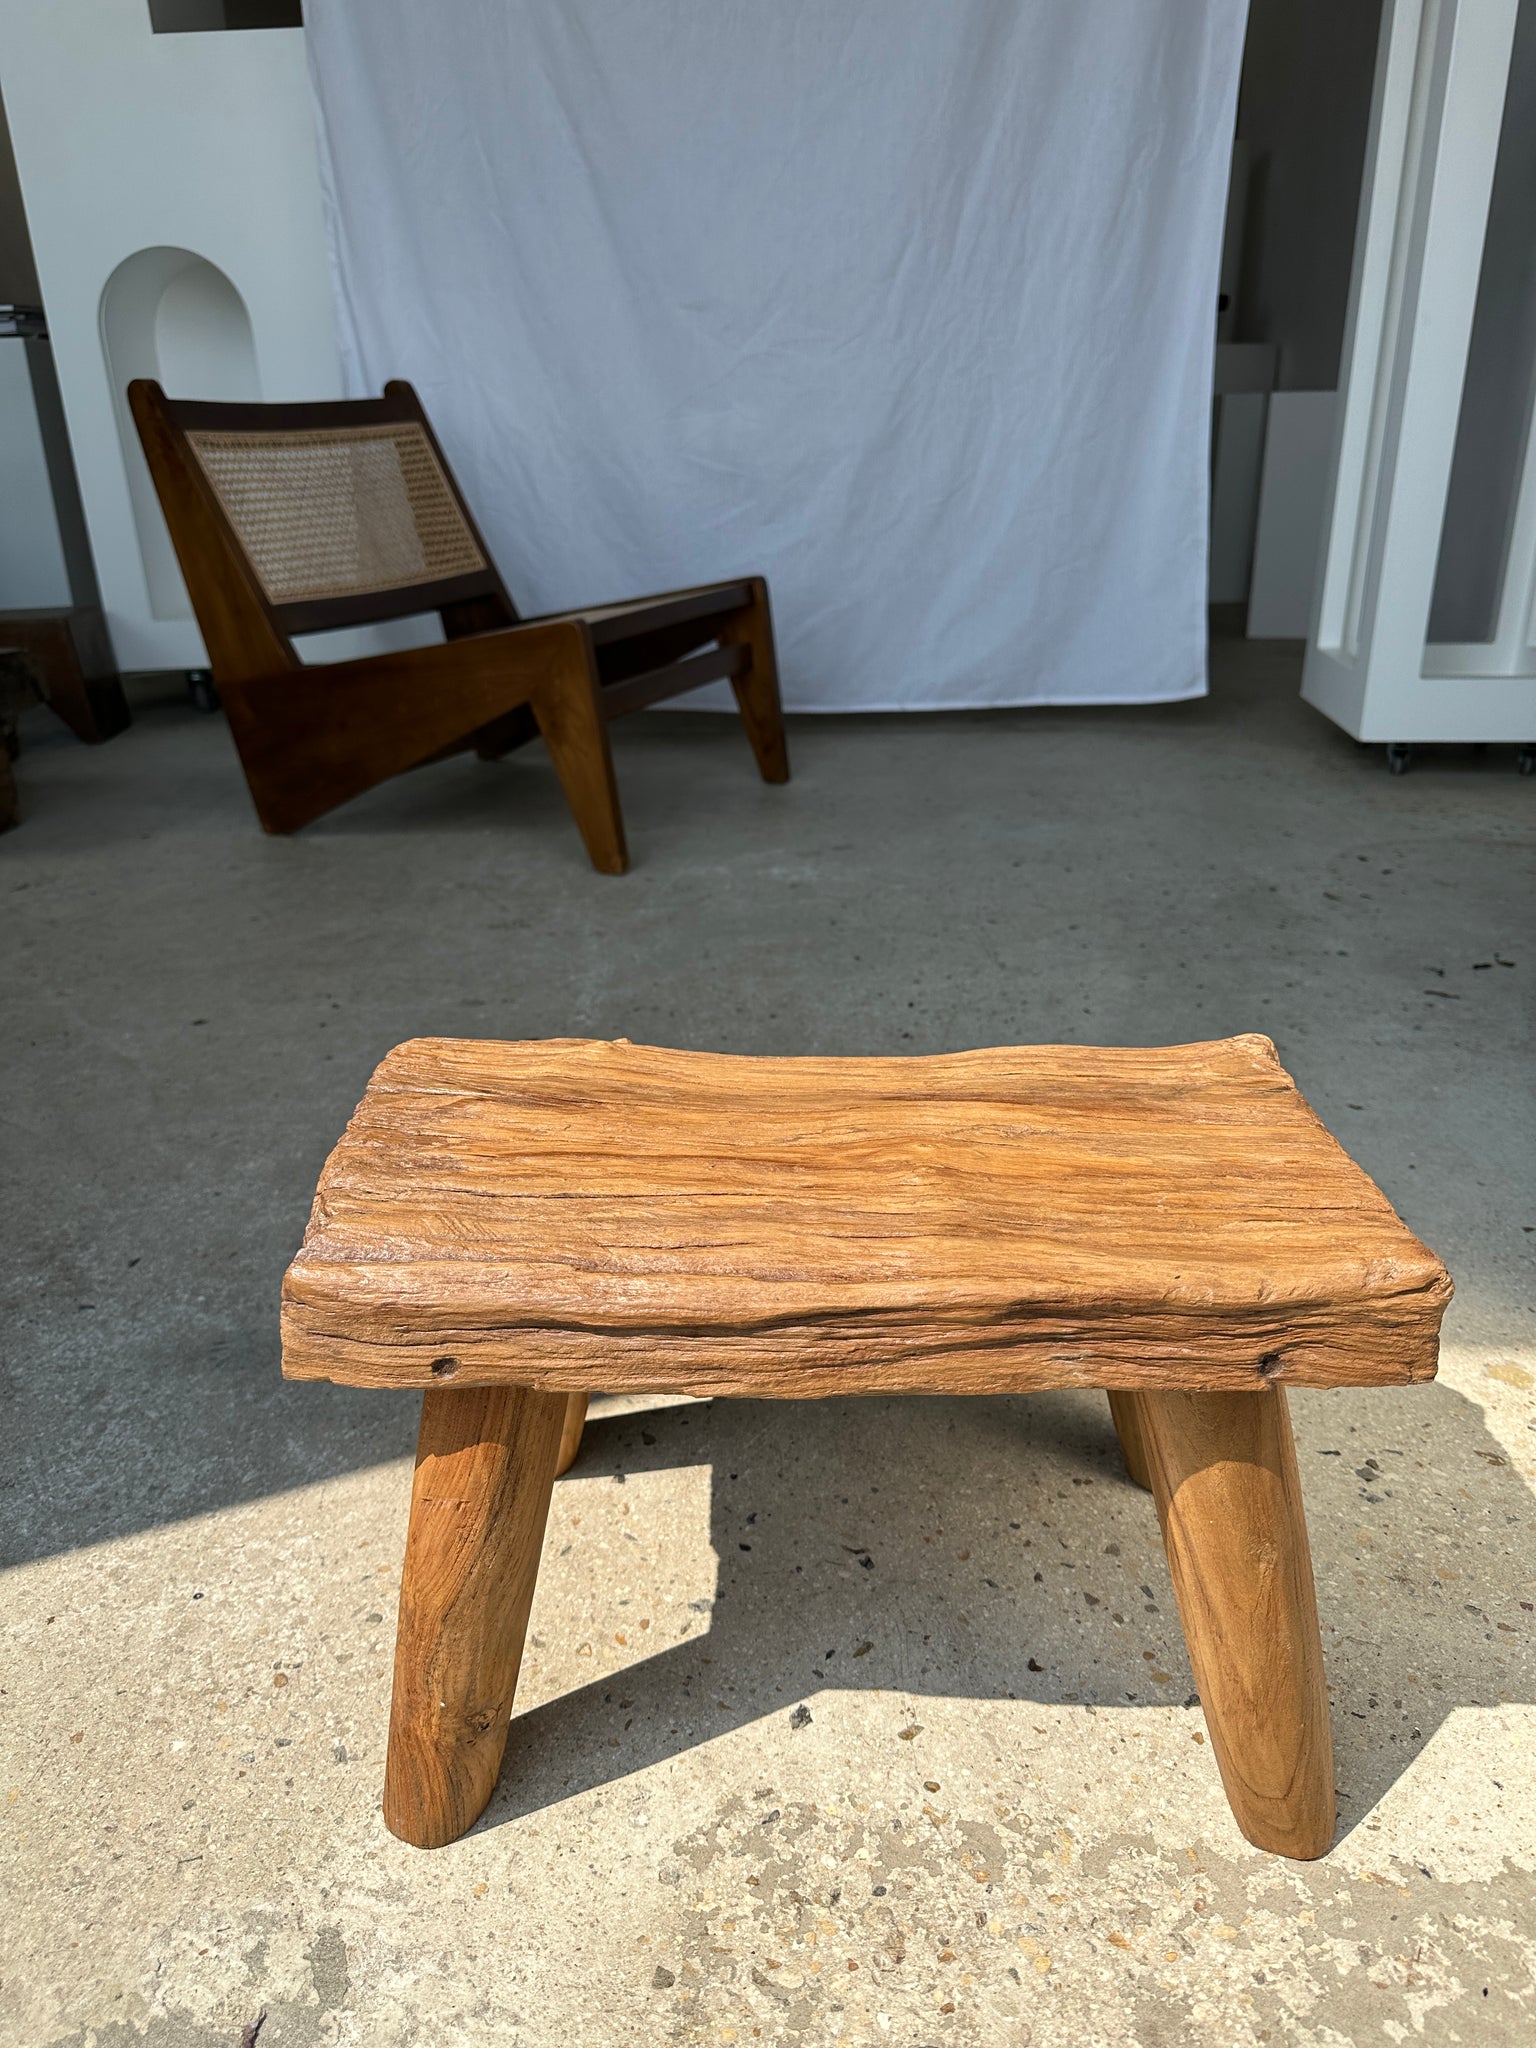 Petite table d'appoint ou tabouret en teck blond quadripode H:30 L43 l27